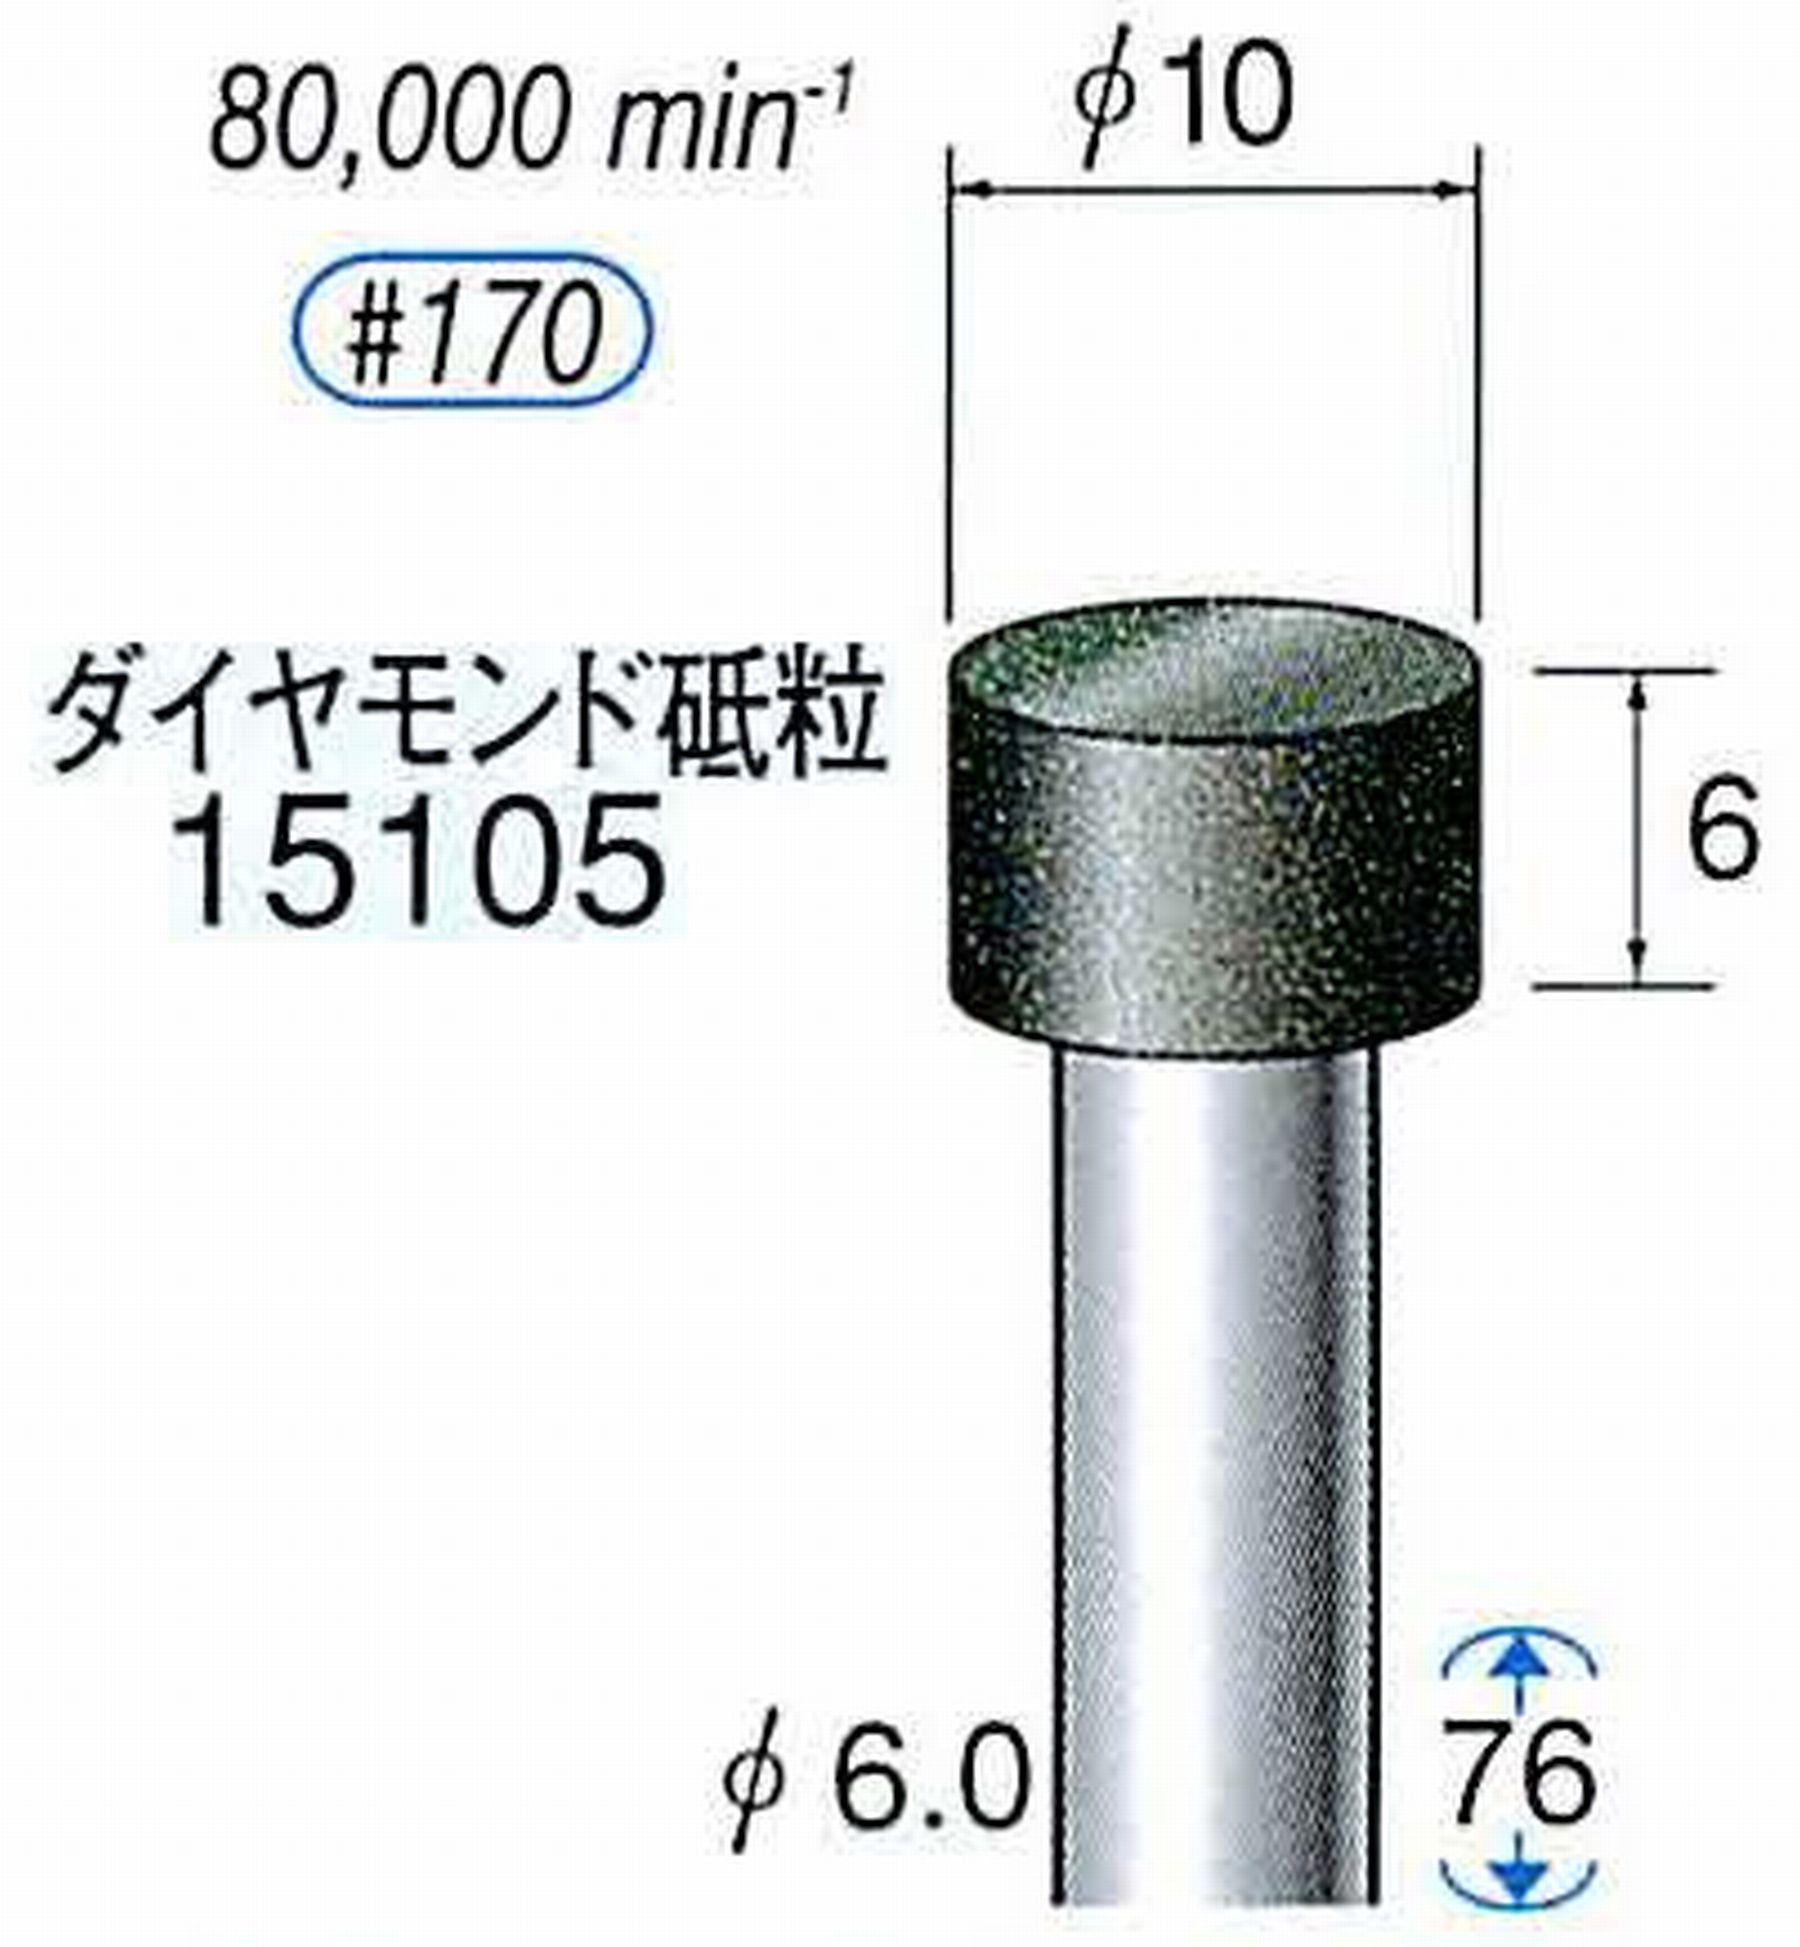 ナカニシ/NAKANISHI レジノイドダイヤモンド ダイヤモンド砥粒 軸径(シャンク)φ6.0mm 15105